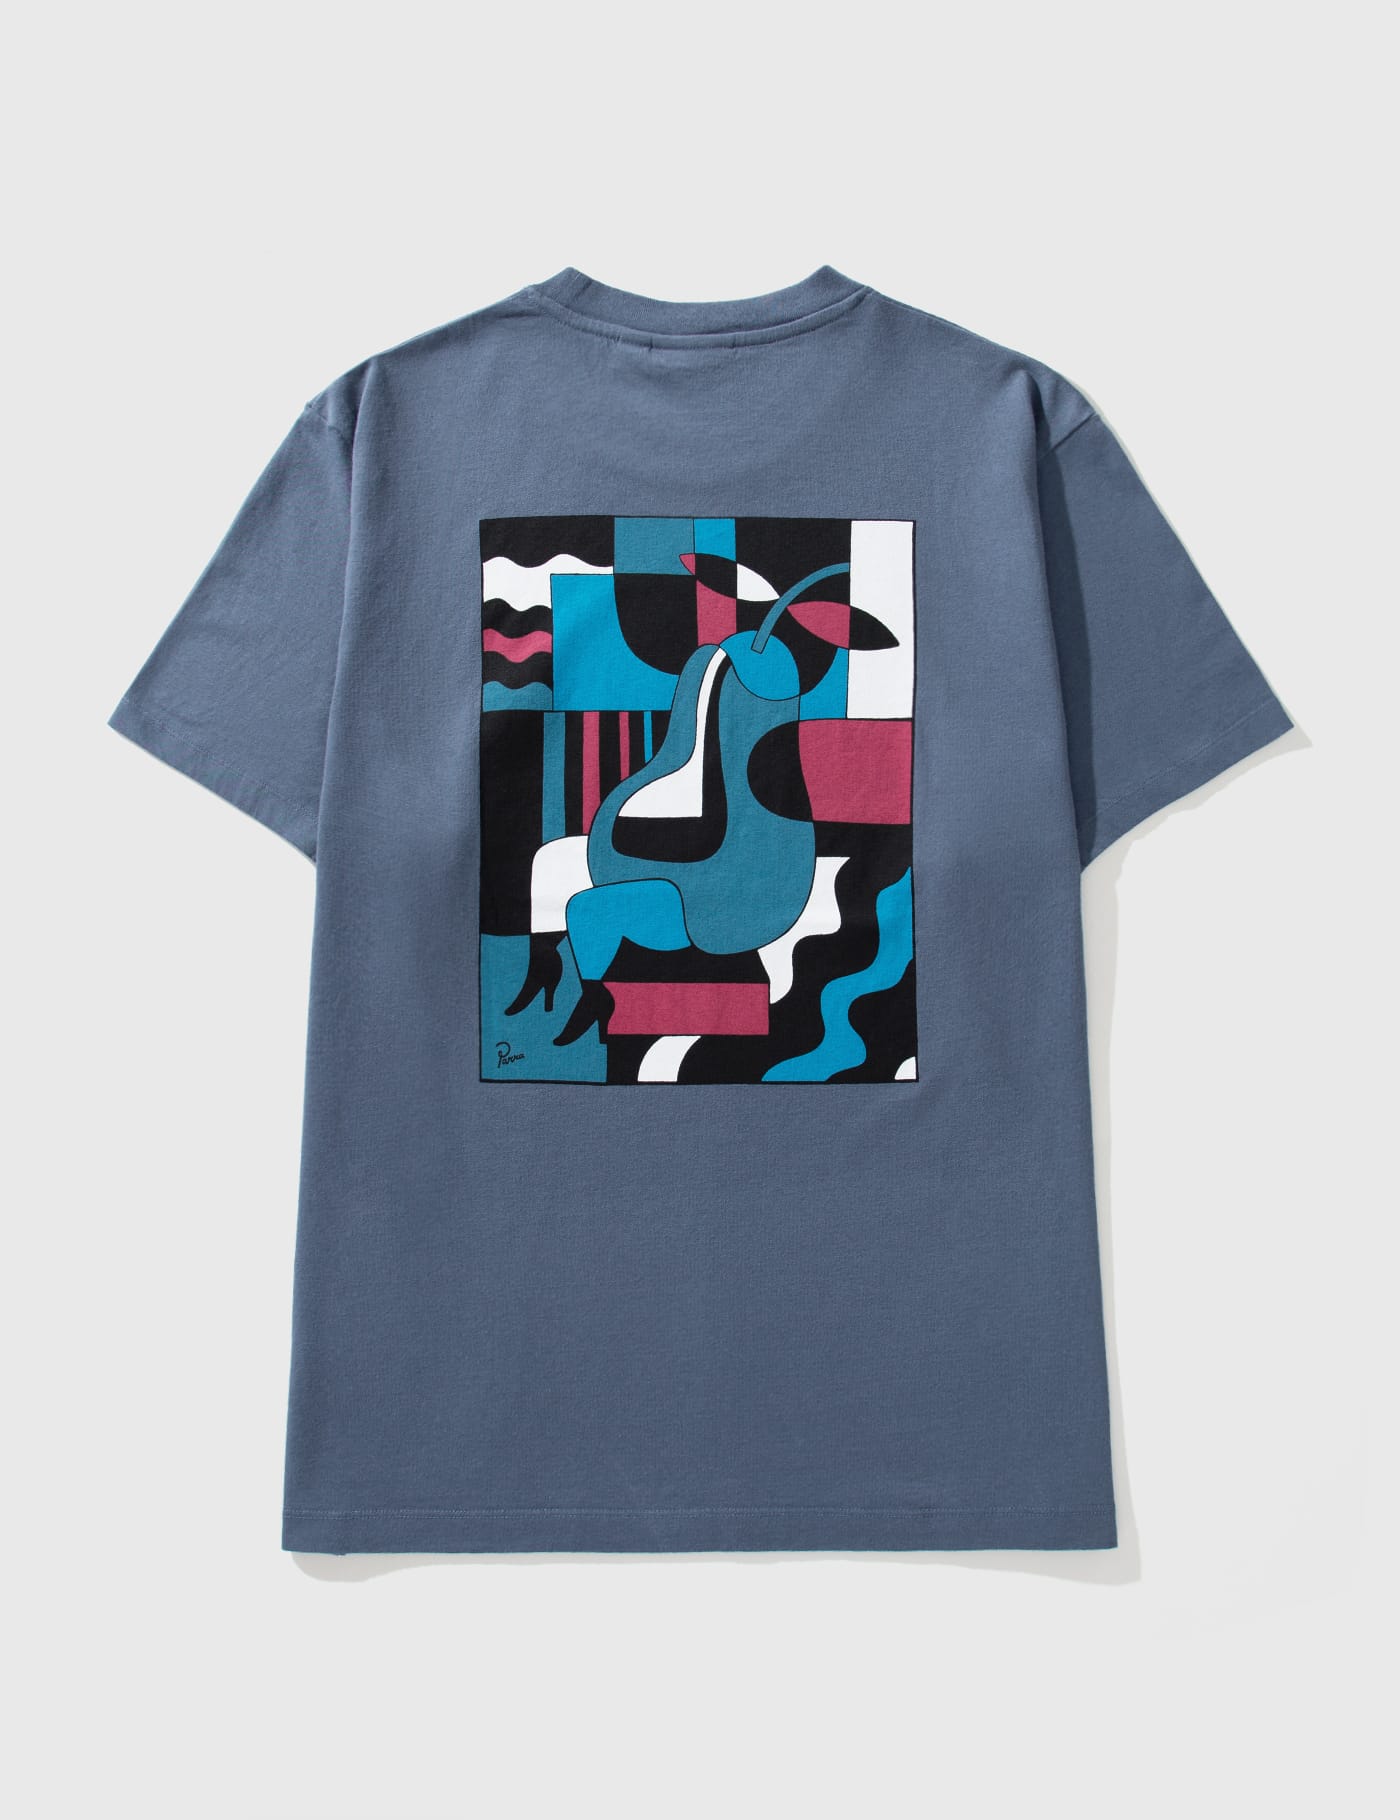 By Parra 블루 시팅 페어 티셔츠